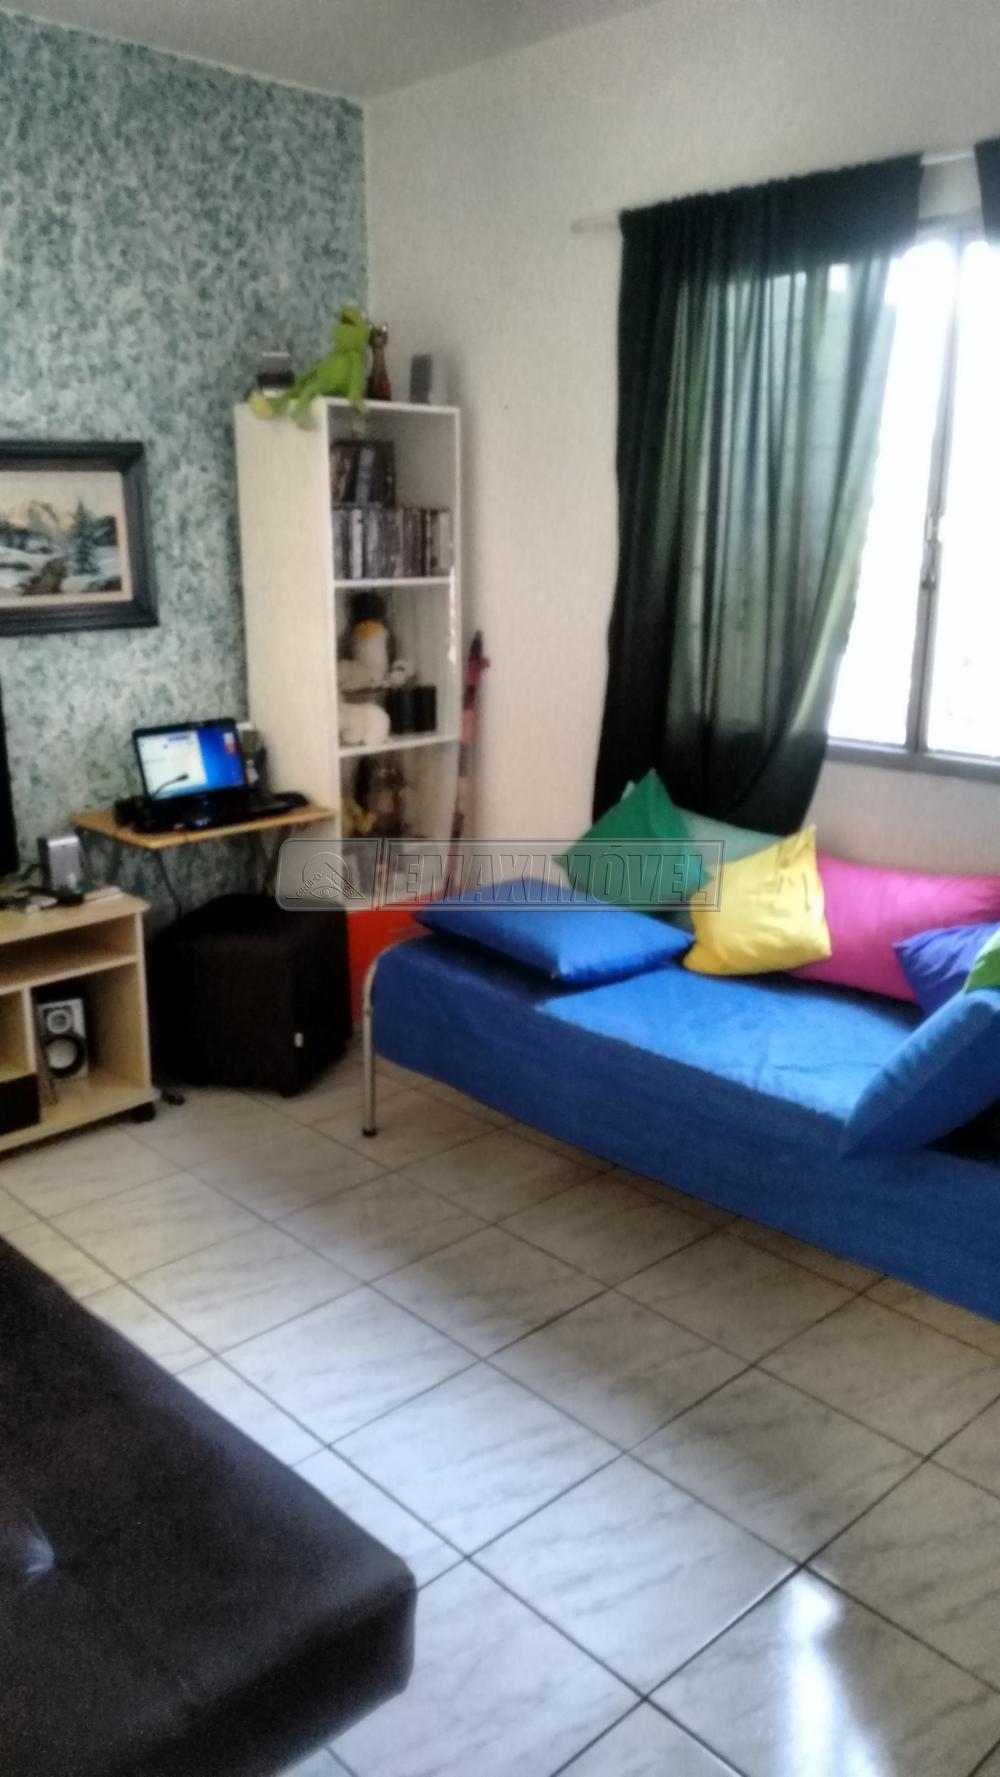 Comprar Casa / em Bairros em Sorocaba R$ 300.000,00 - Foto 4